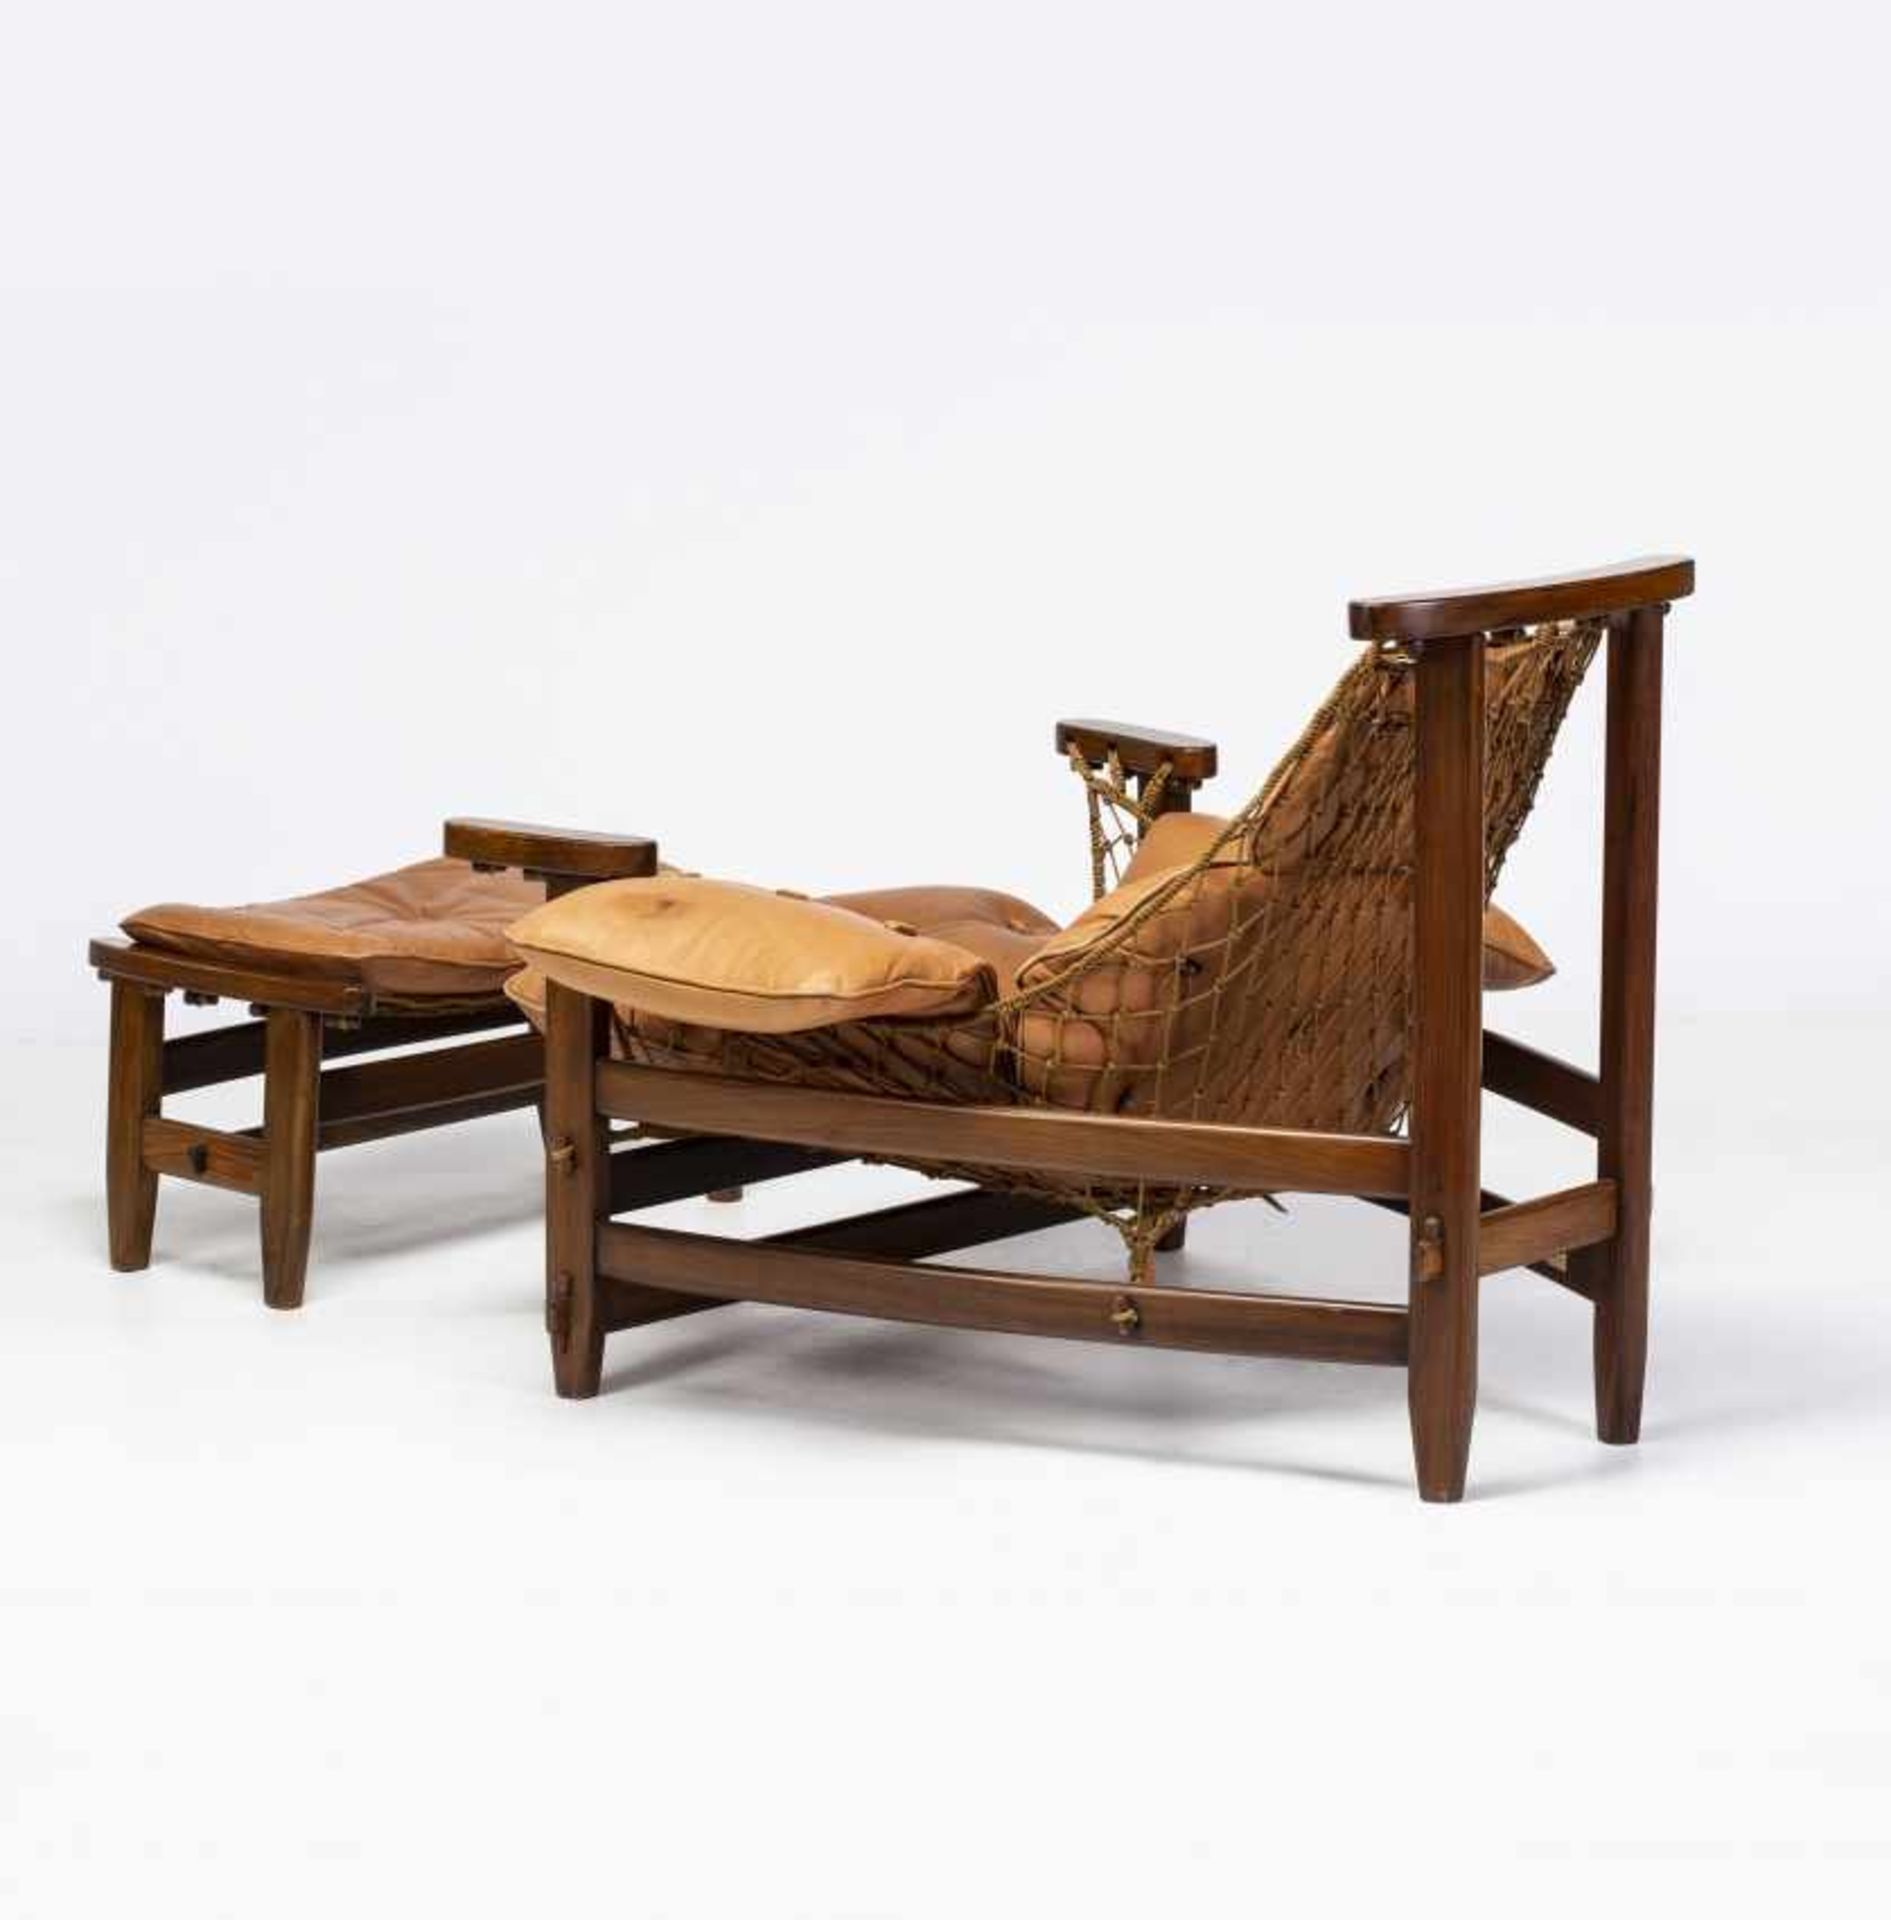 Jean Gillon, "Captain's" armchair with ottoman, Rosewood, sJean GillonIasi, 1919 - Sao Paulo, 2007" - Bild 6 aus 8